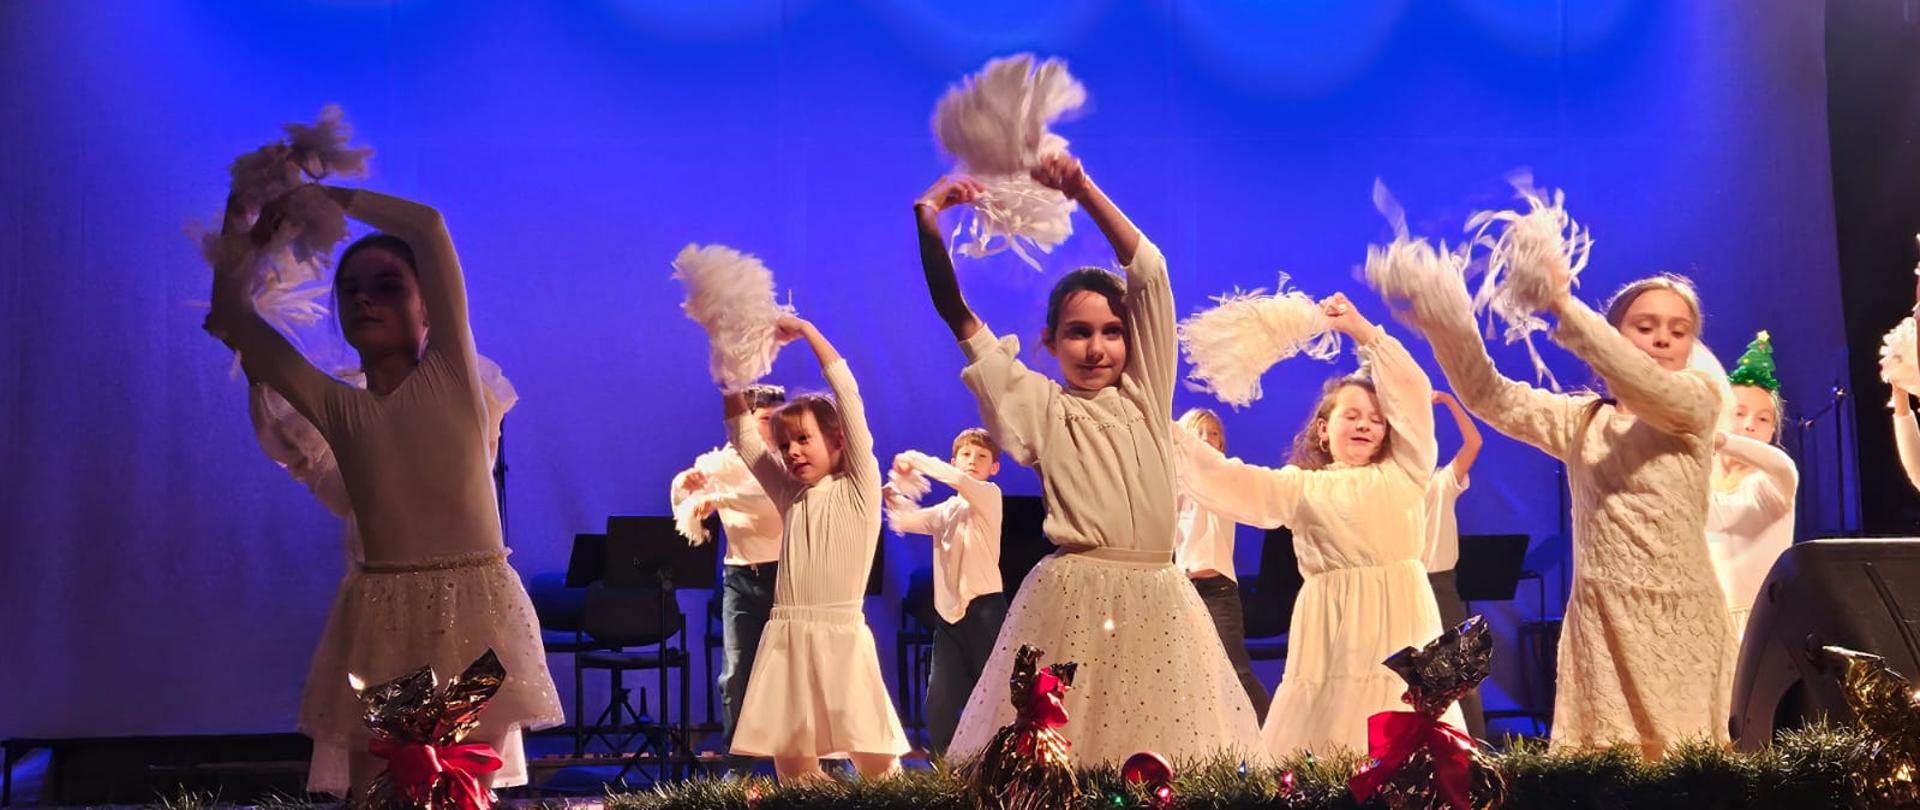 Zdjęcie kolorowe. Grupa dzieci w białych strojach śnieżynek tańczy na scenie na jednolitym niebieskim tle. W rękach trzymają białe, papierowe gwiazdki.